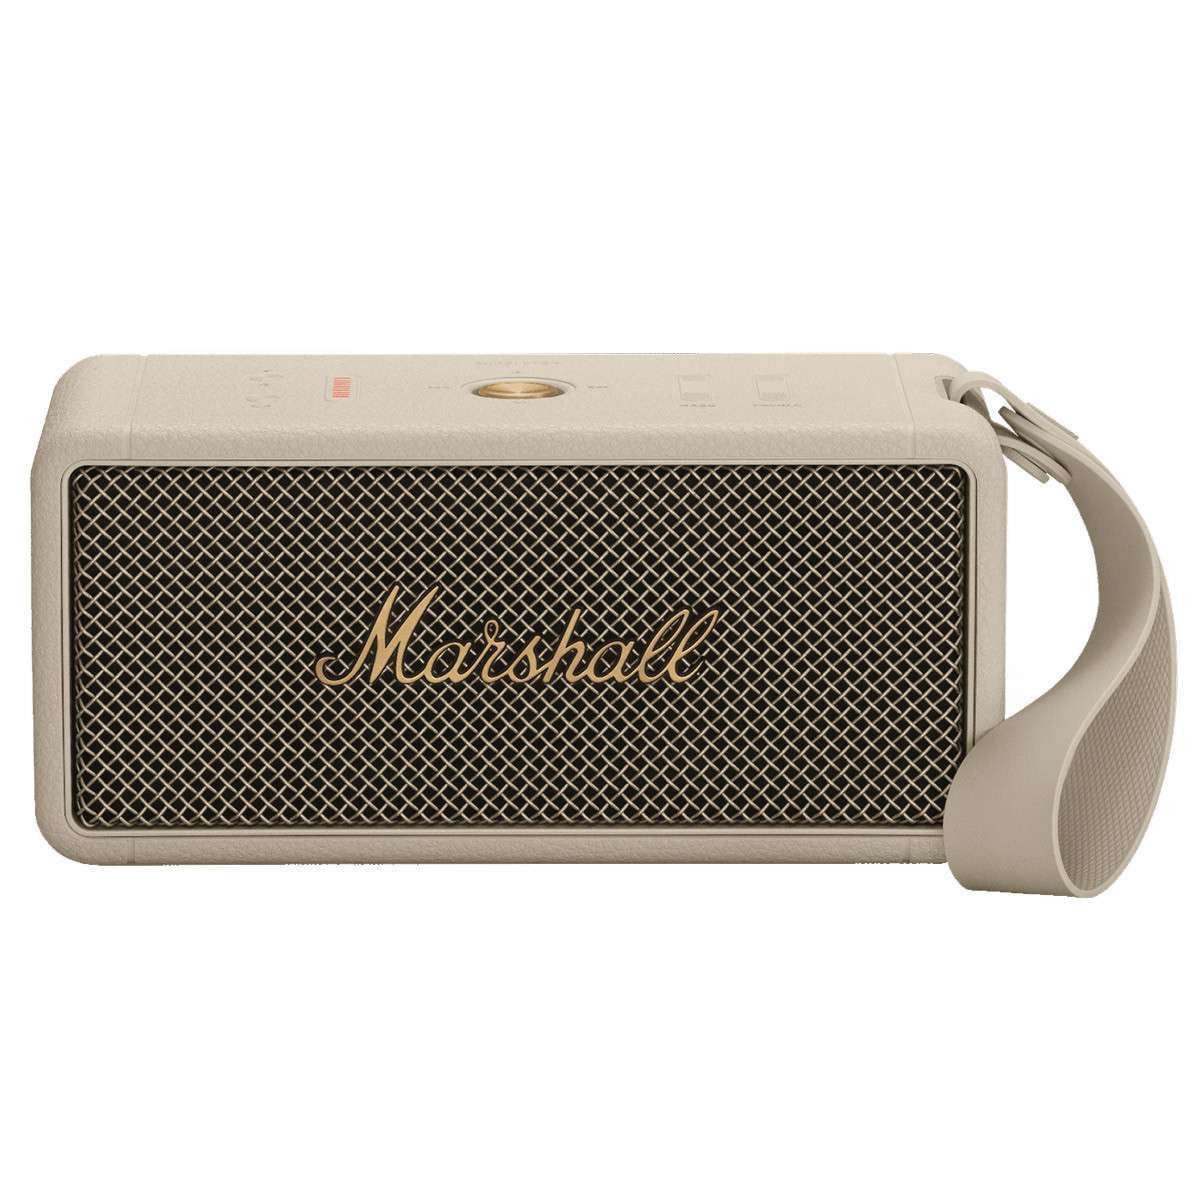 Loa Bluetooth Marshall Middleton Portable - Hàng Nhập Khẩu